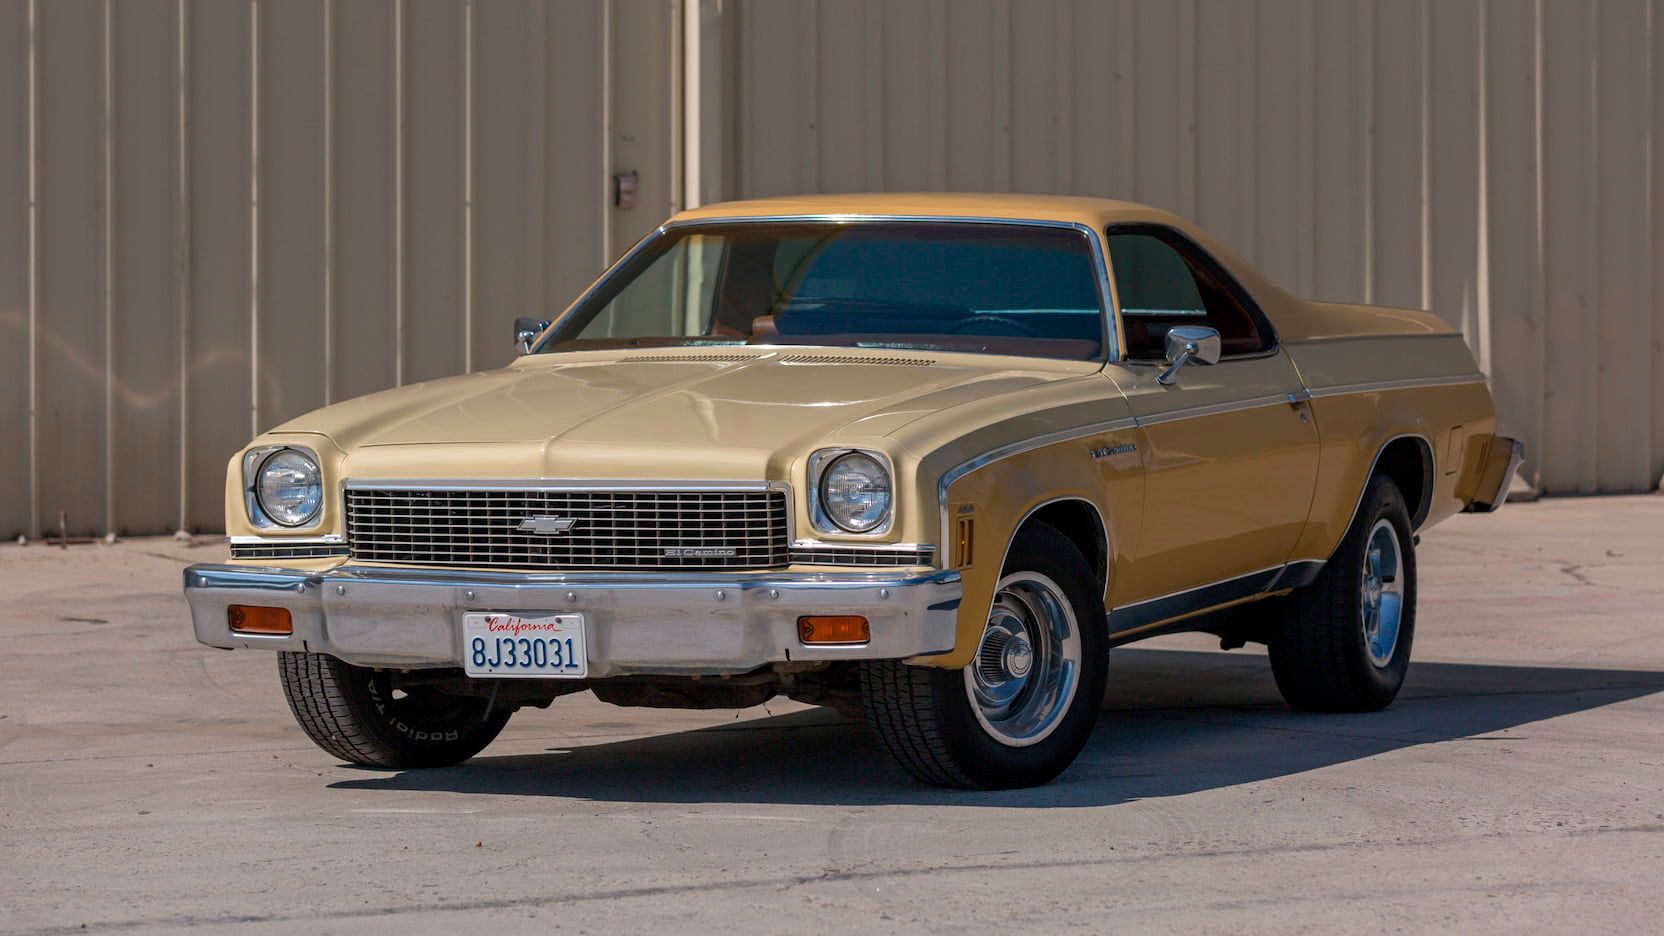 A parked 1973 Chevy El Camino